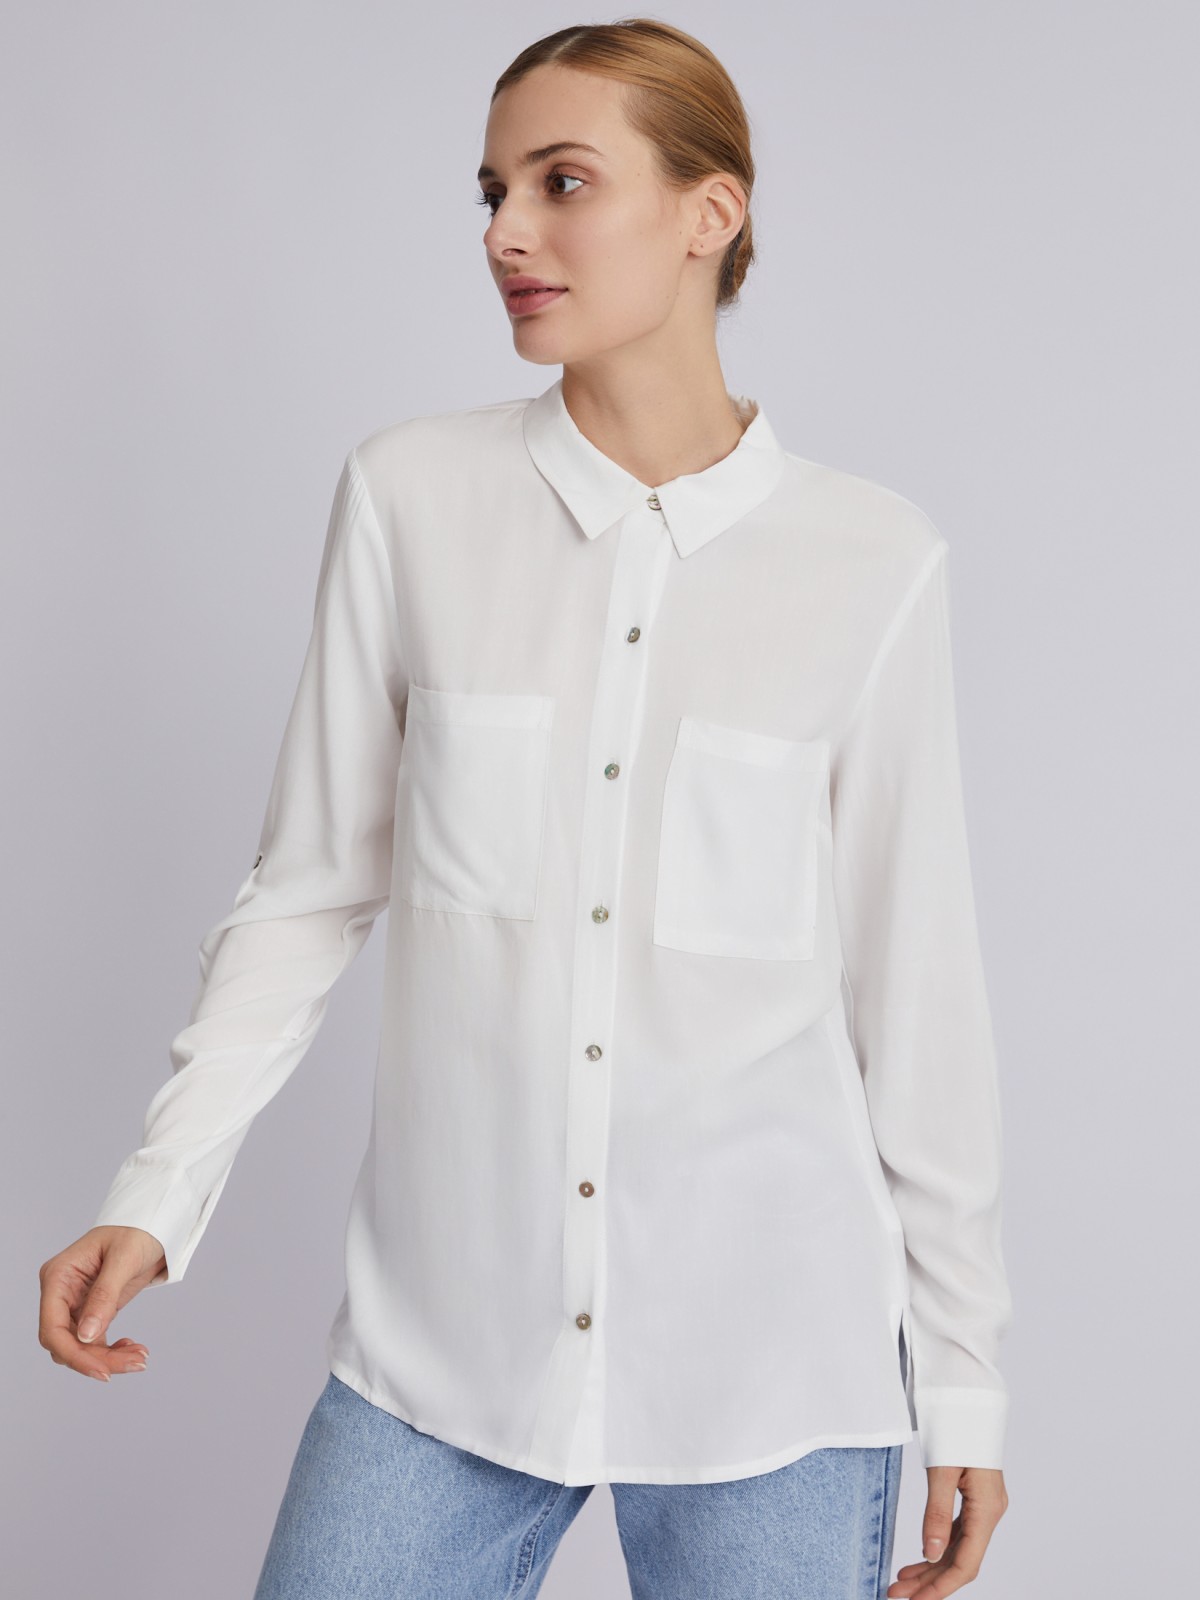 Офисная рубашка из вискозы с карманами и подхватами на рукавах zolla 023311162052, цвет молоко, размер XS - фото 5